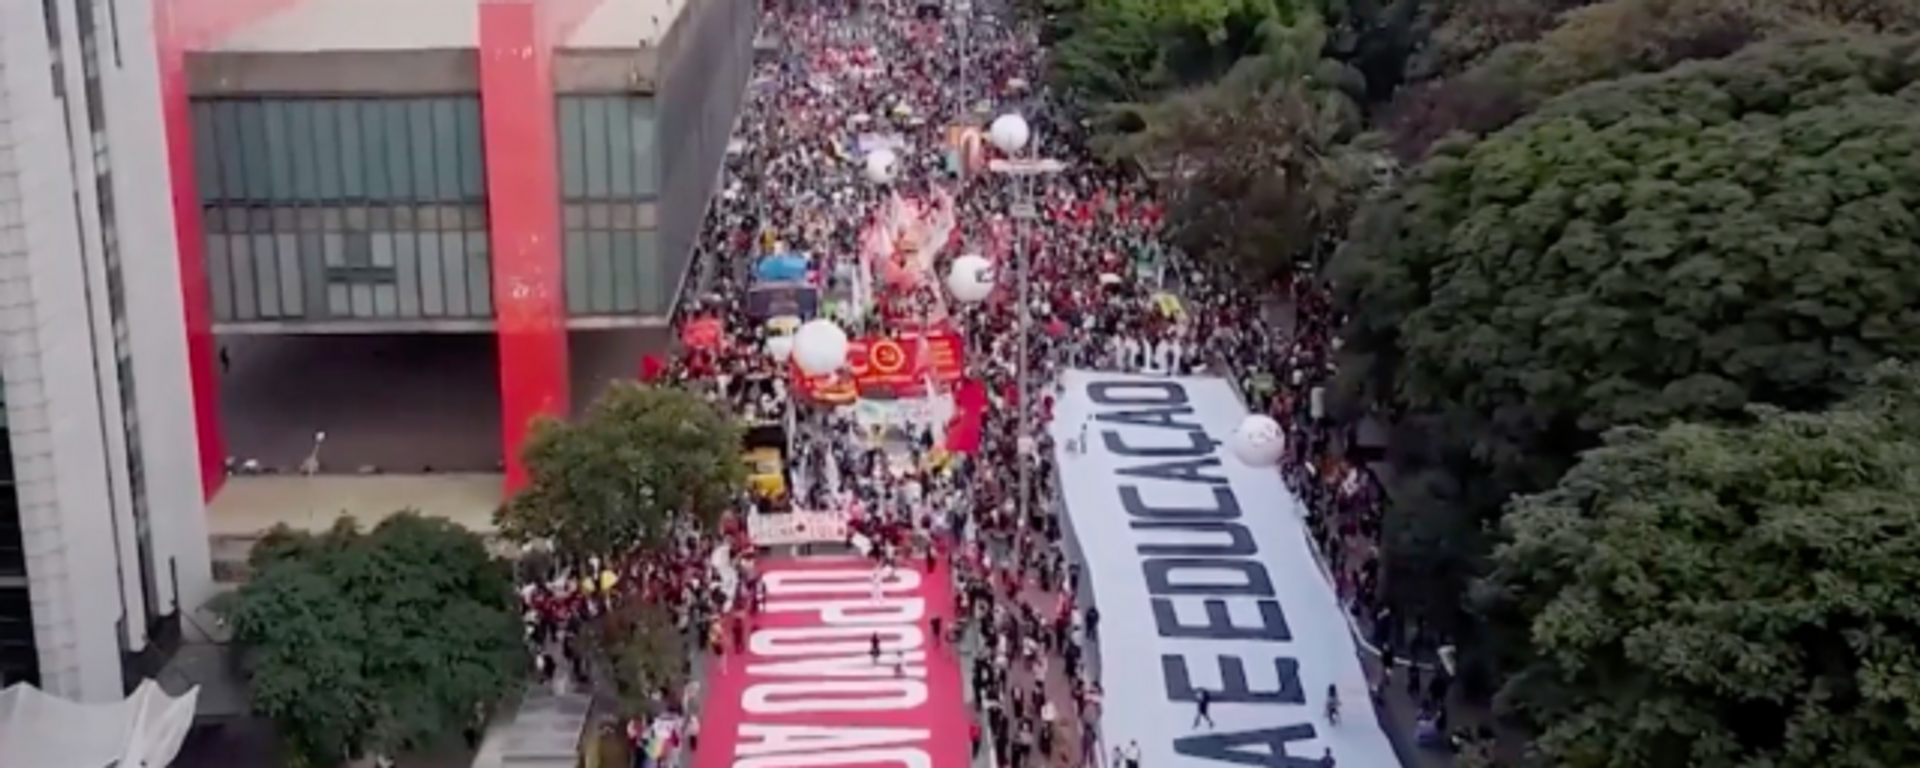 ¡Fuera Bolsonaro!: miles de brasileños piden la destitución del presidente - Sputnik Mundo, 1920, 04.07.2021